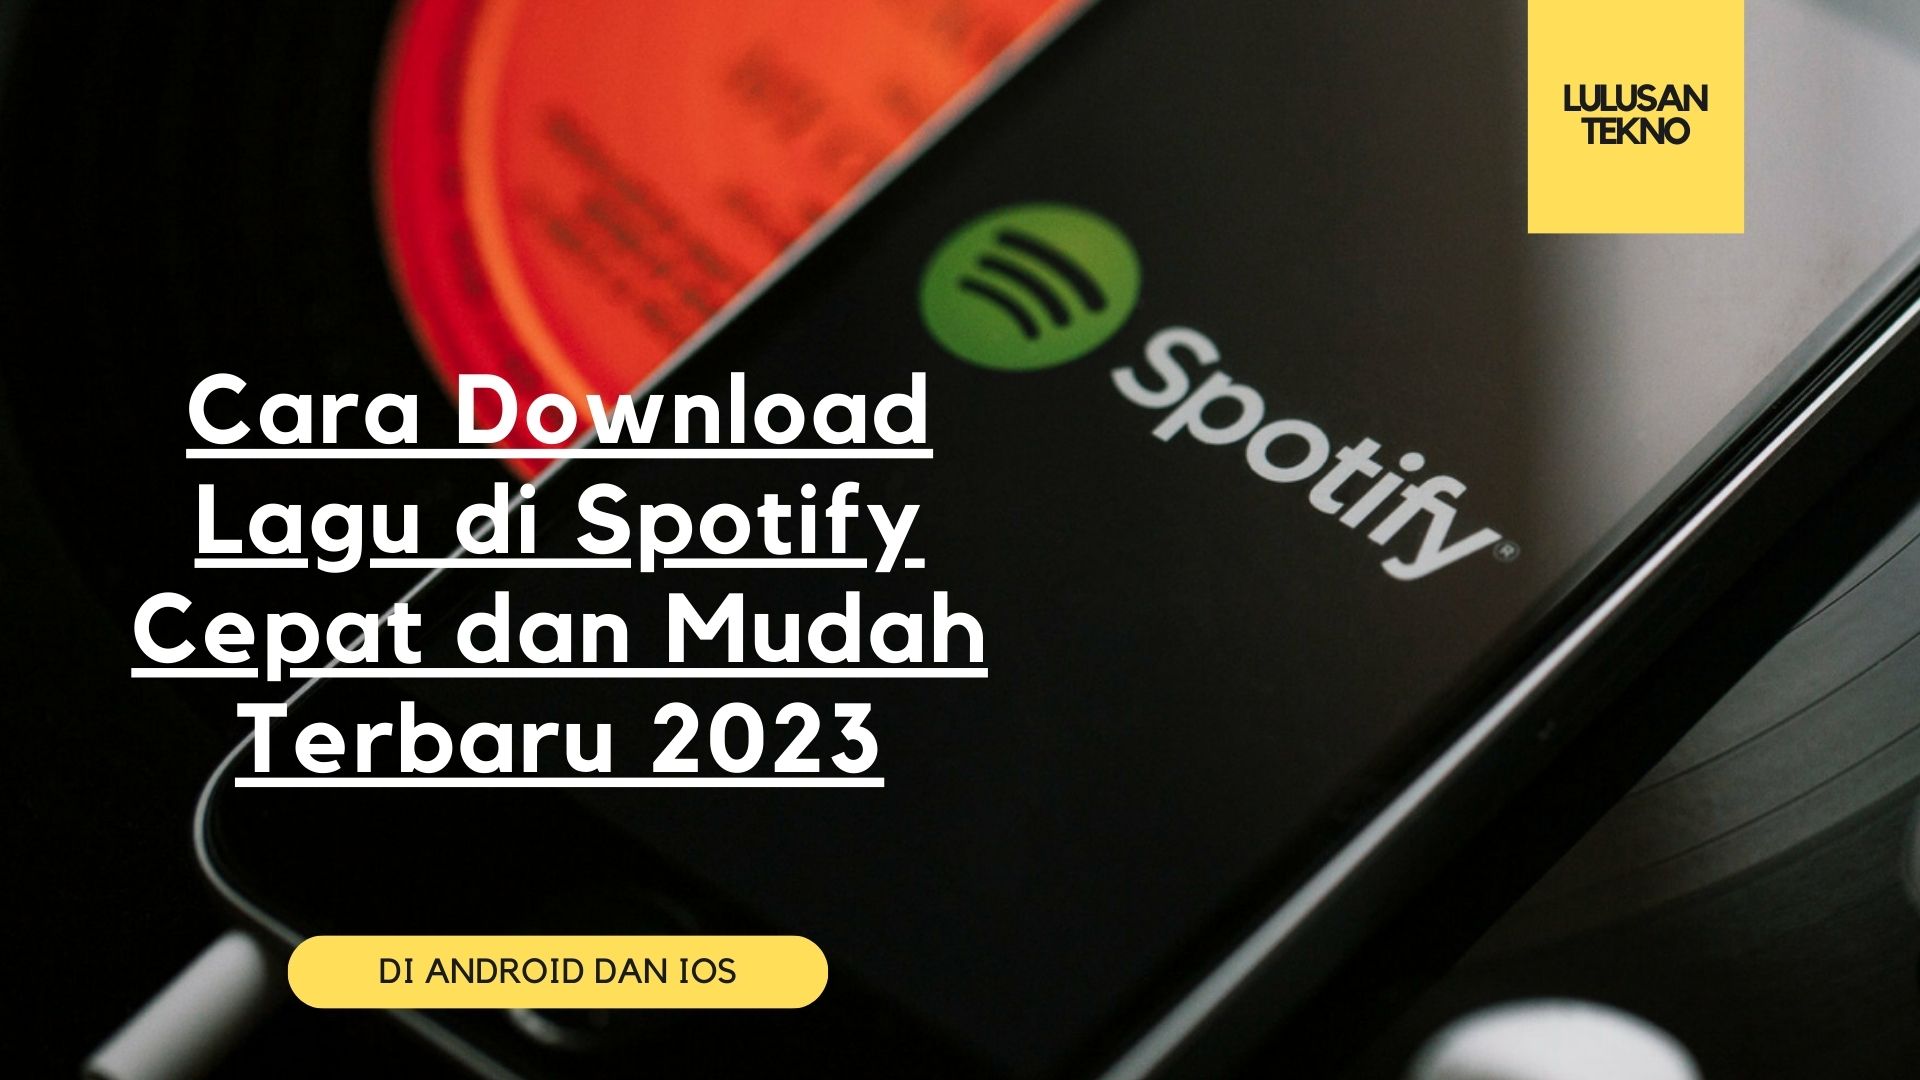 Cara Download Lagu di Spotify Cepat dan Mudah Terbaru 2023